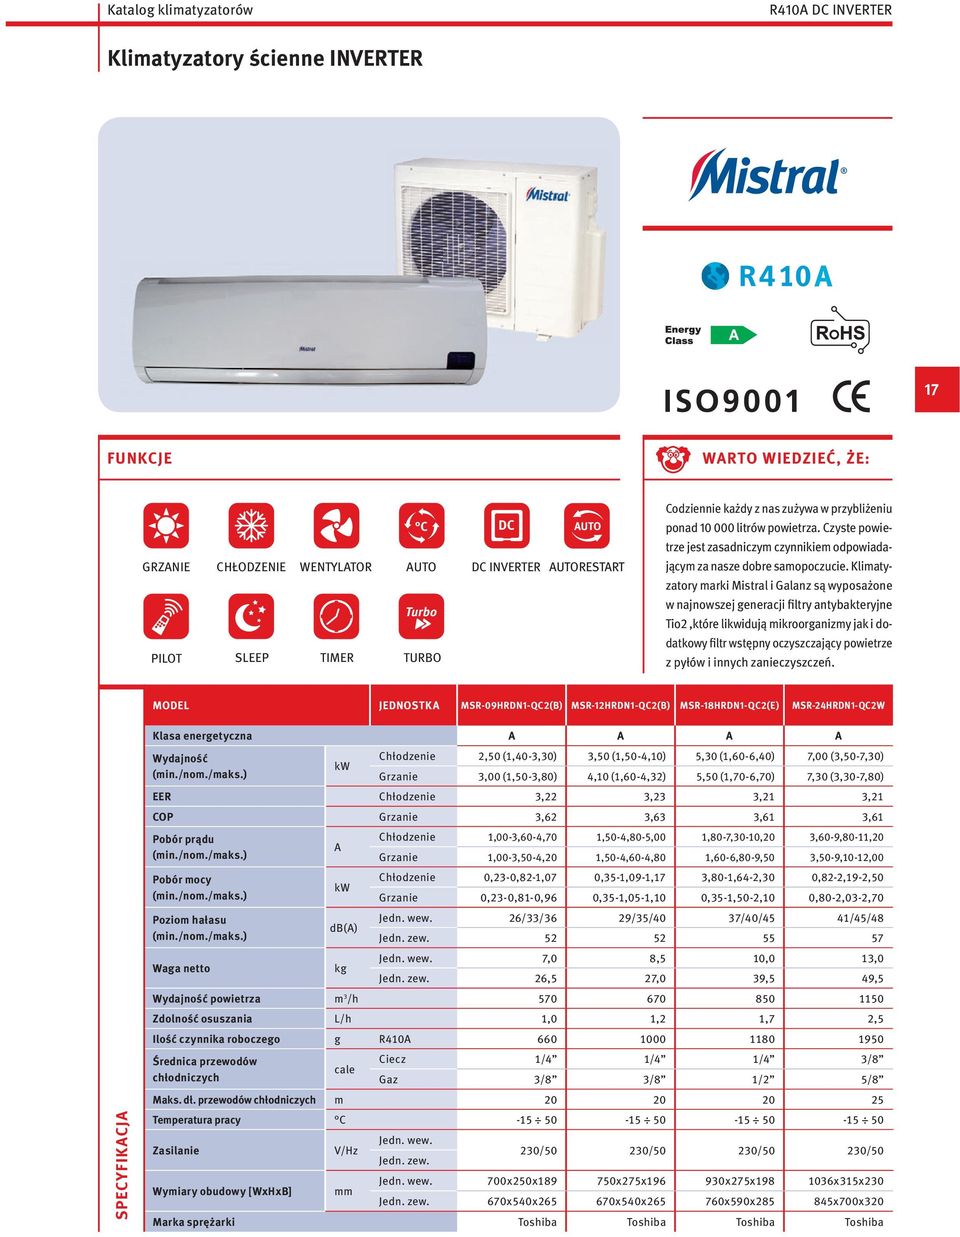 Klimatyzatory marki Mistral i Galanz są wyposażone w najnowszej generacji filtry antybakteryjne Tio2,które likwidują mikroorganizmy jak i dodatkowy filtr wstępny oczyszczający powietrze z pyłów i